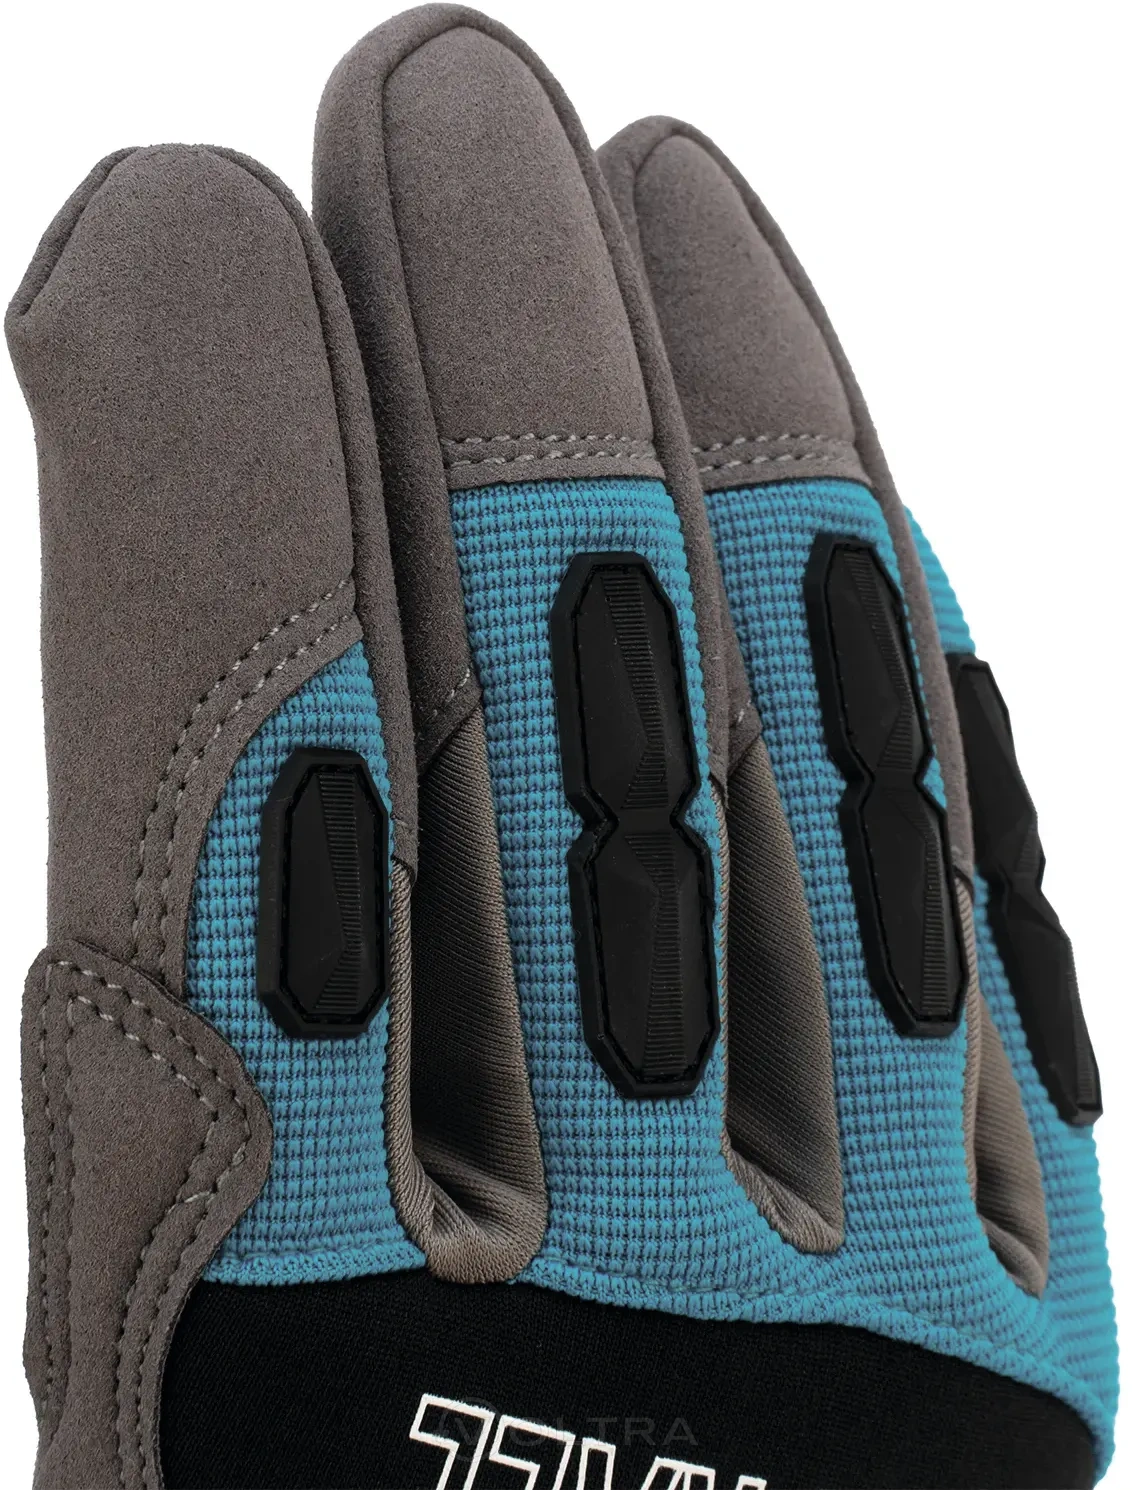 Перчатки универсальные комбинированные с защитными накладками STYLISH размер XL (10) Gross (90320)